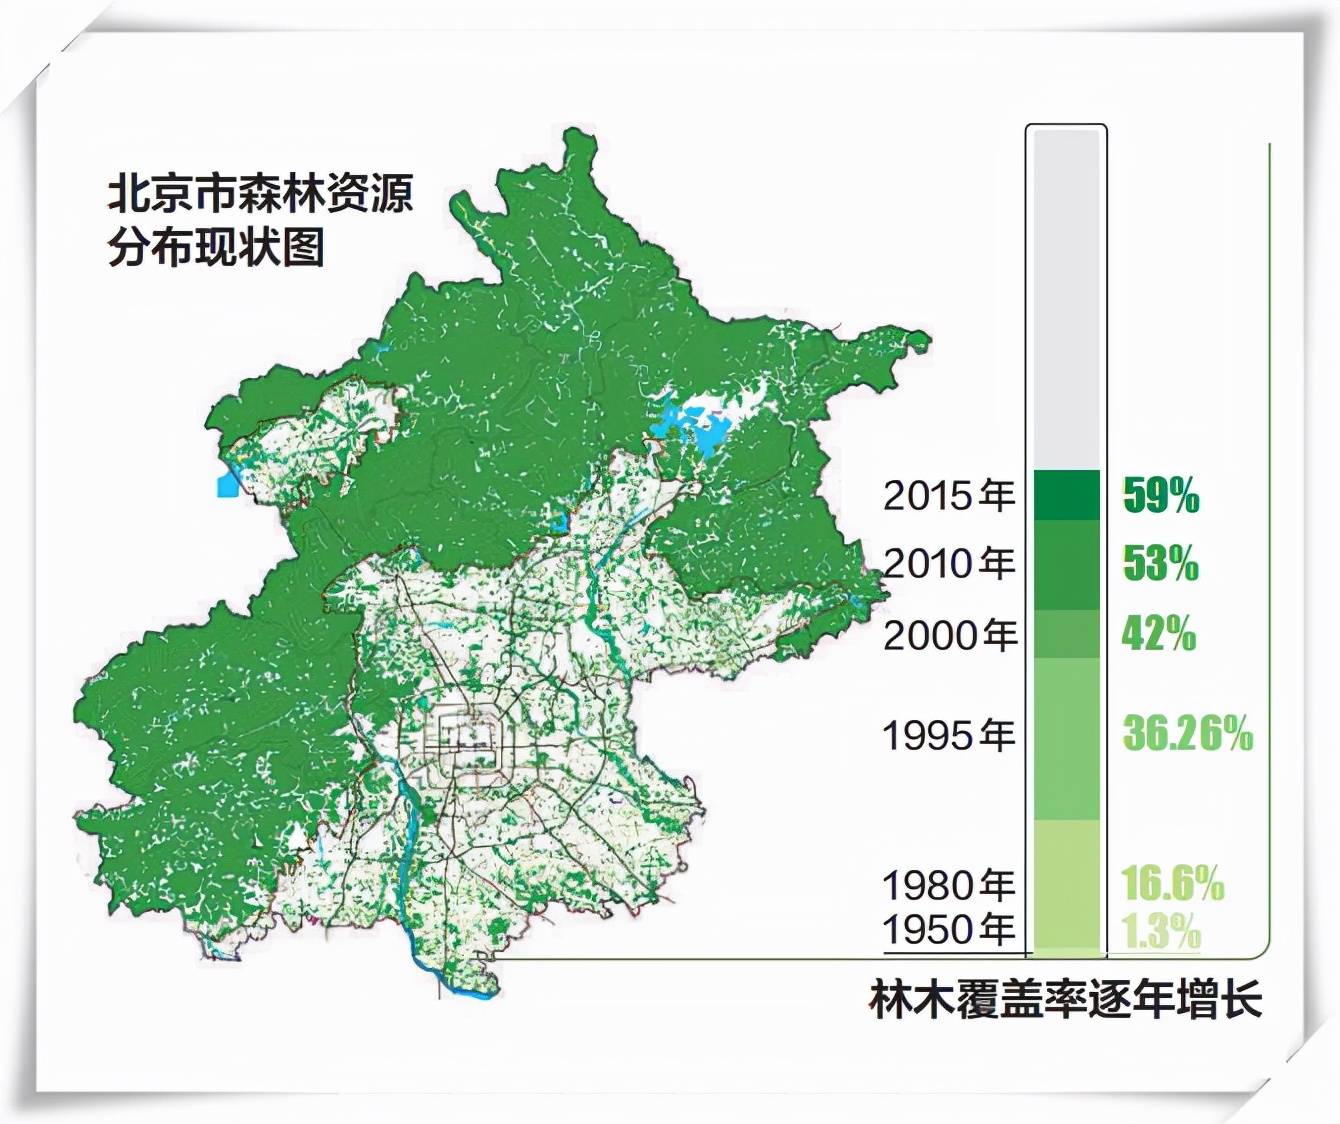 2020年底,北京通过京津风沙源治理累计造林了896万亩,城市森林覆盖率